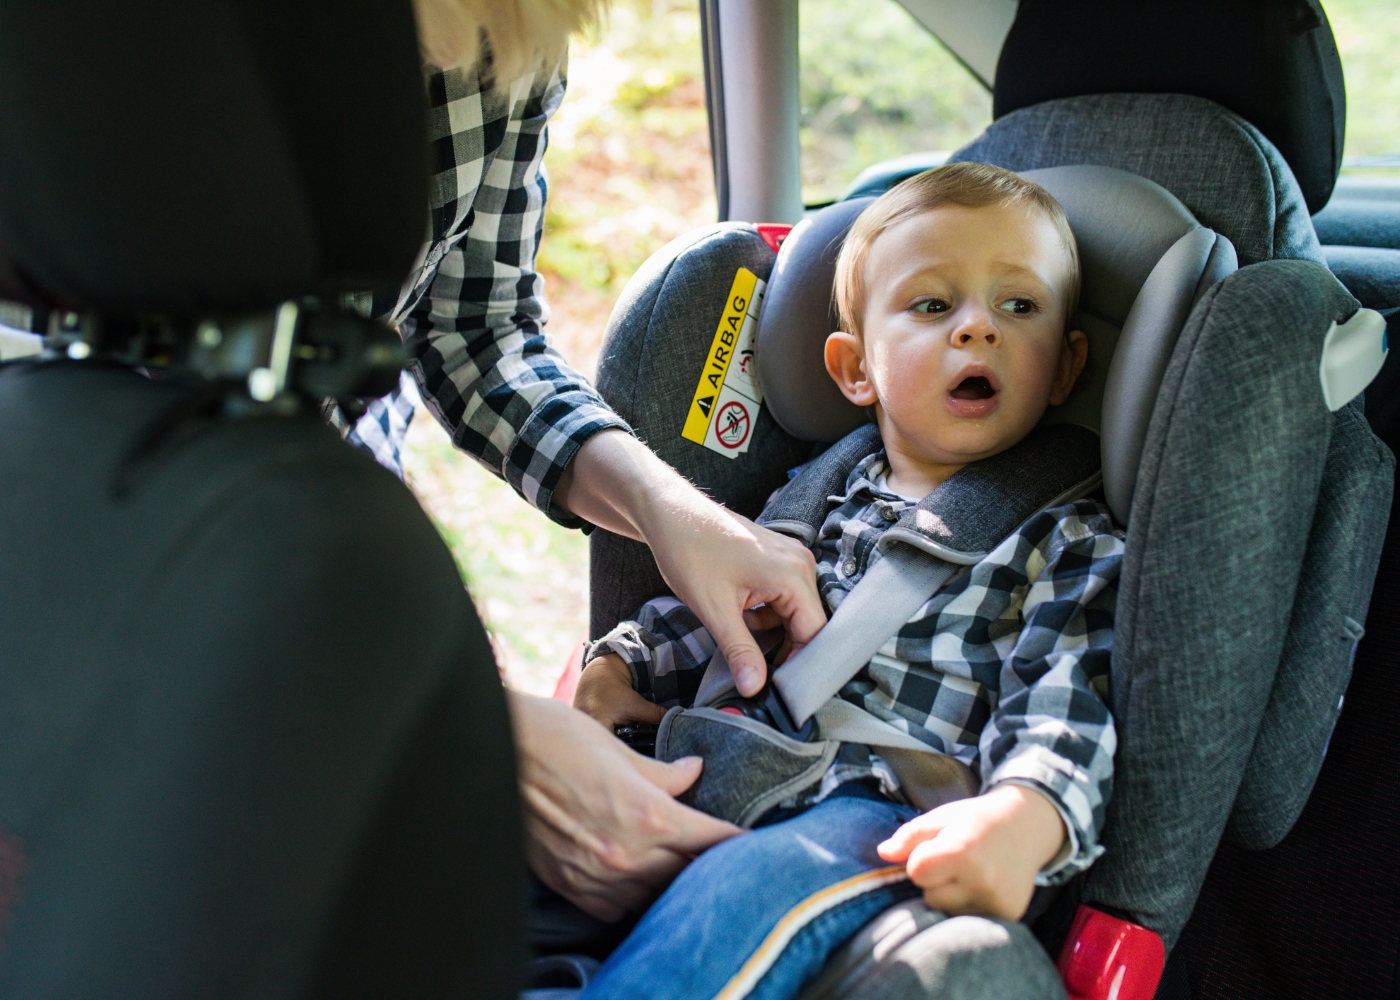 Quando virar o bebê para frente na cadeirinha do carro?